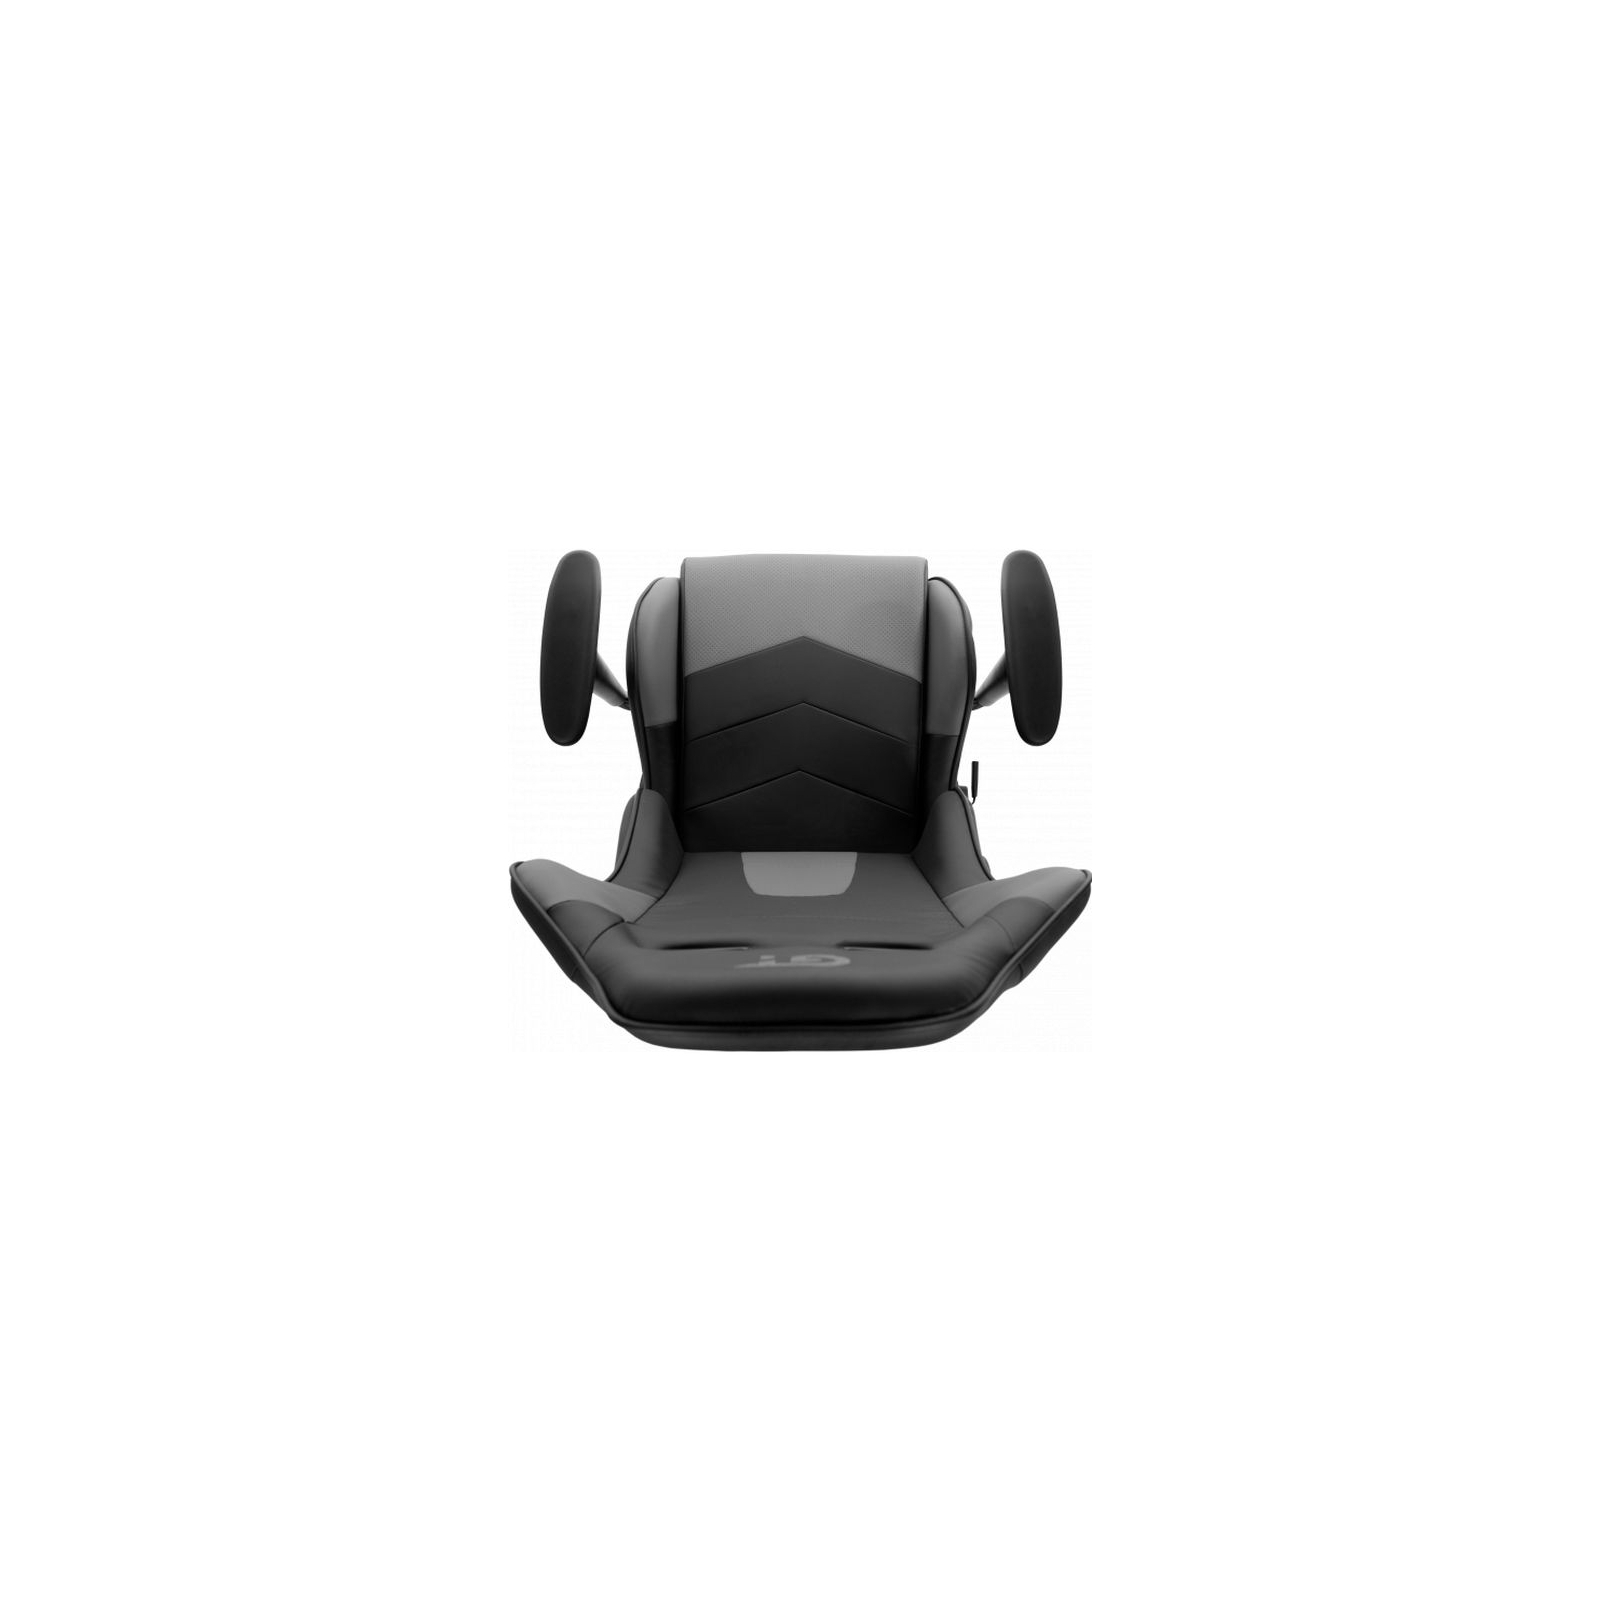 Крісло ігрове GT Racer X-2317 Black/Dark Gray зображення 9